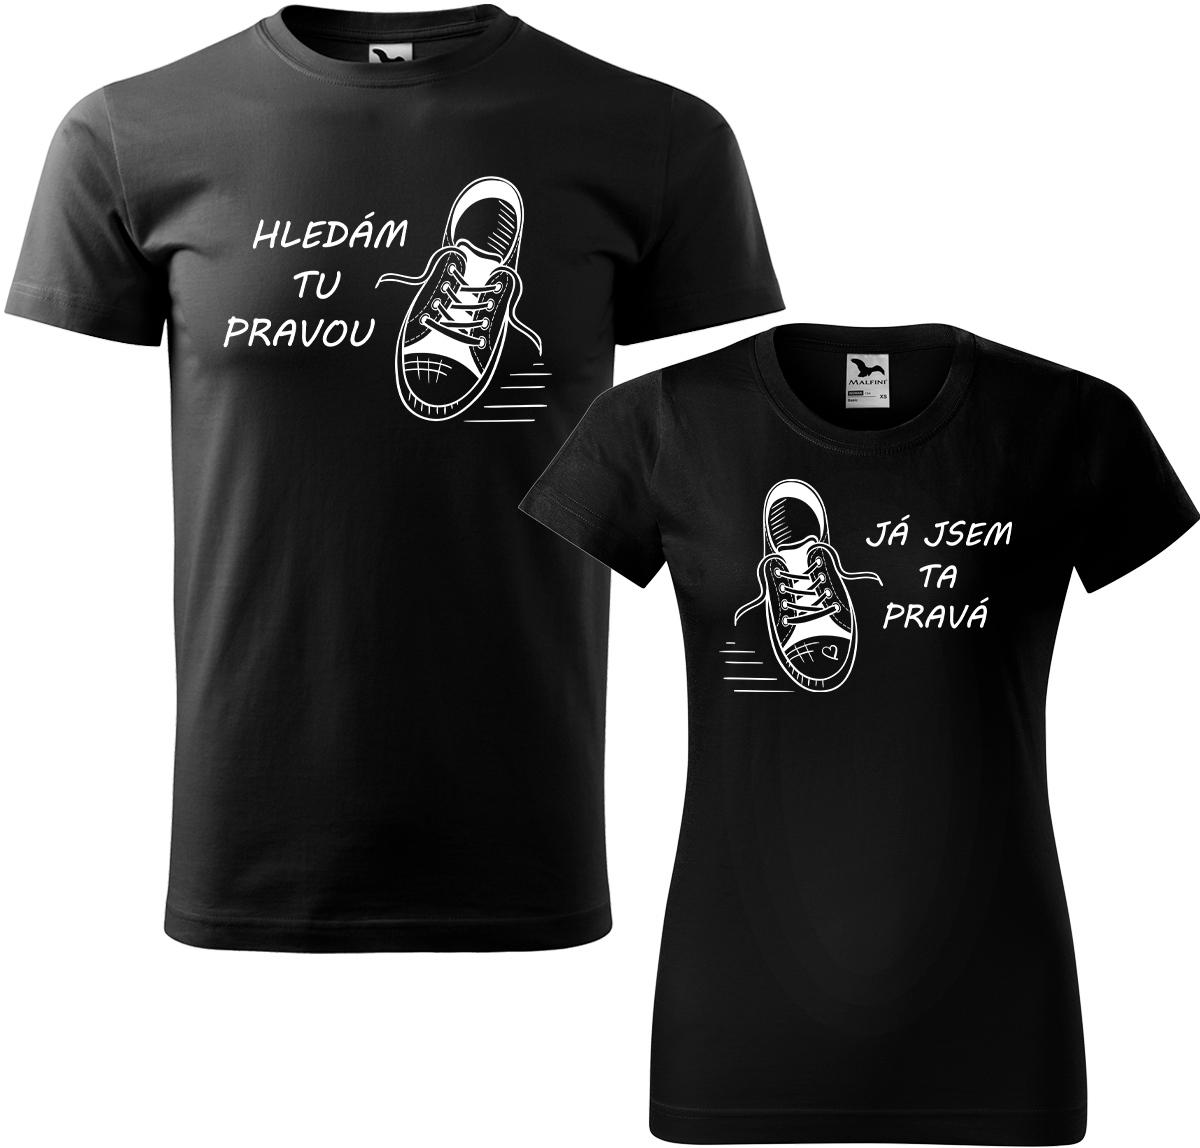 Trička pro páry - Kecky Barva: Černá (01), Velikost dámské tričko: XL, Velikost pánské tričko: XL